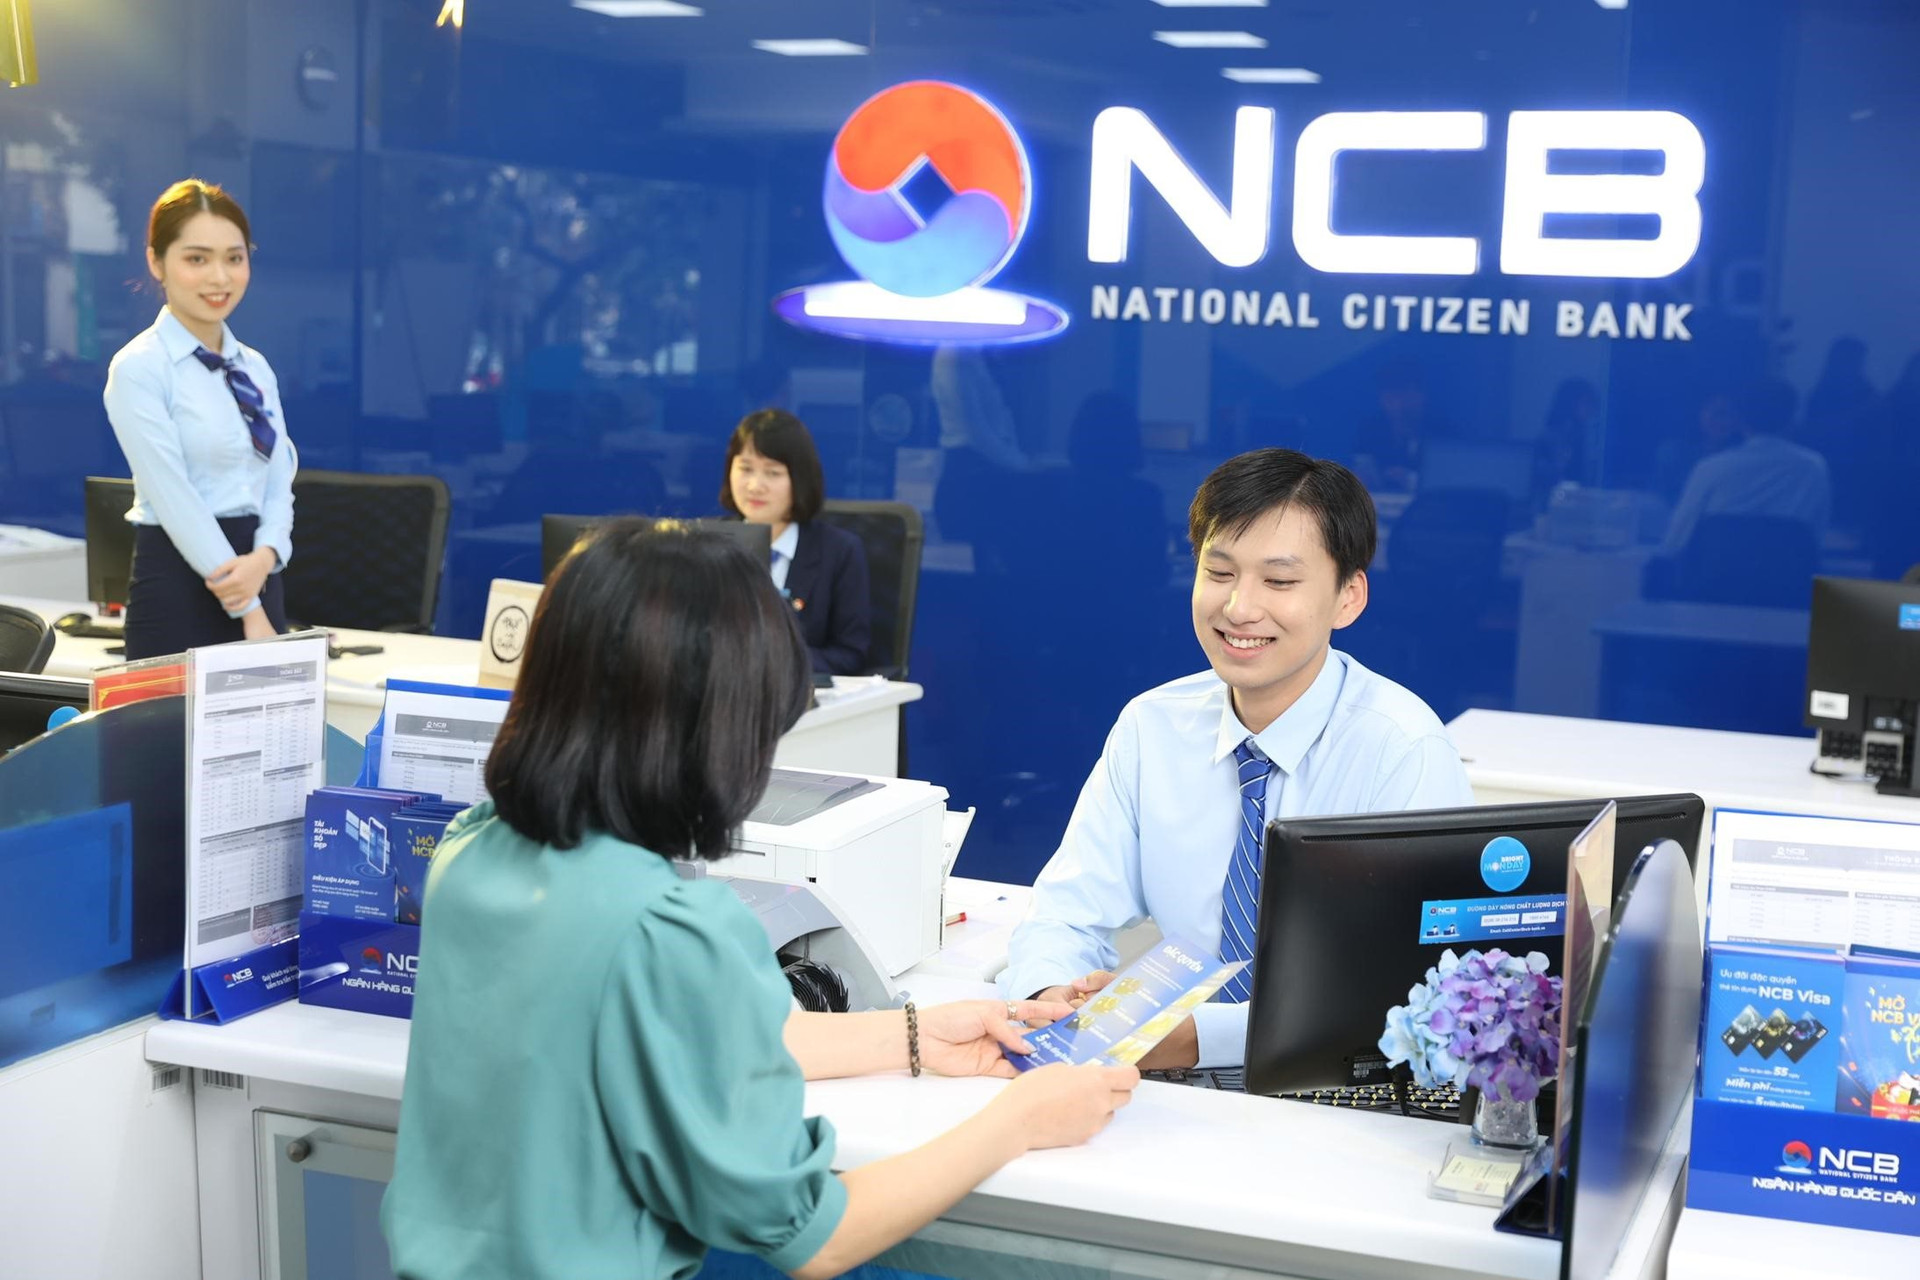 Ngân hàng NCB tri ân khách hàng bằng các trải nghiệm đẳng cấp, chất lượng - Ảnh 2.